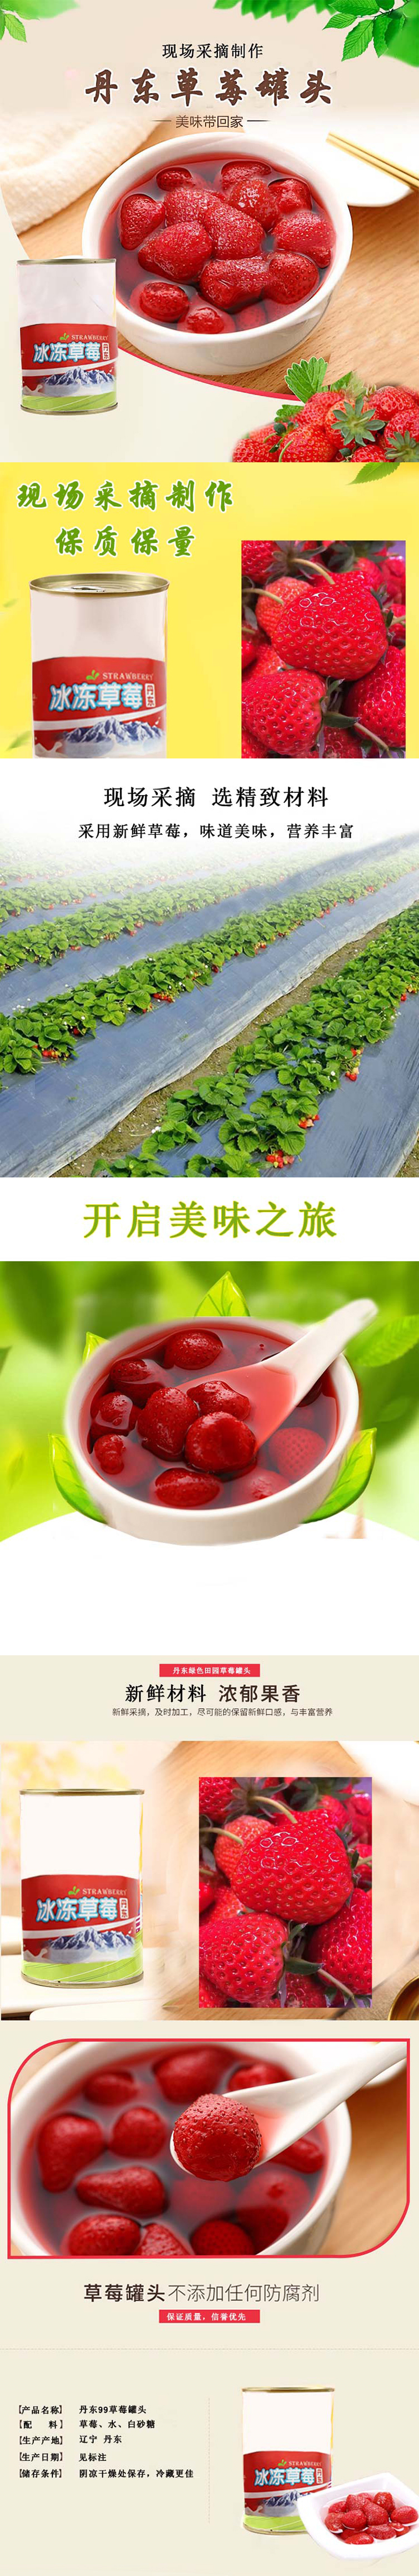 草莓罐头详情页-美食特产-有机食品-新鲜蔬果